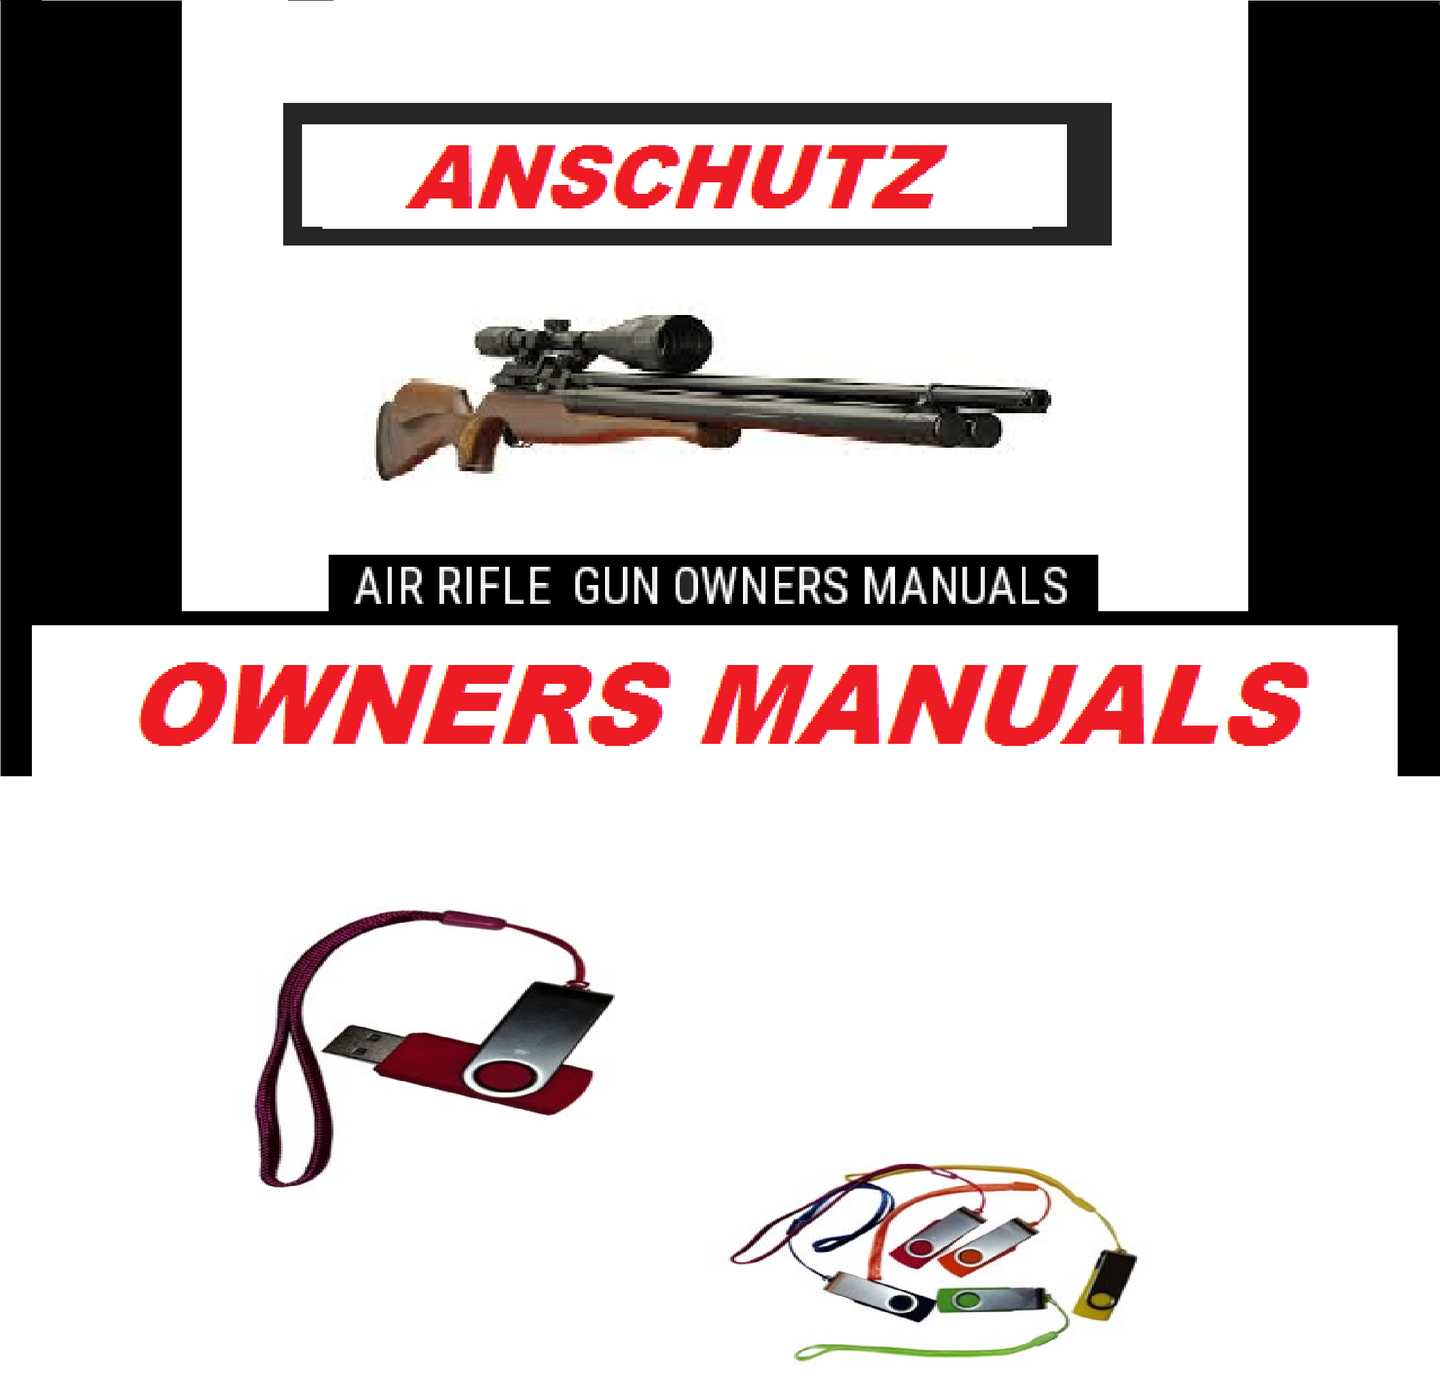 Anschutz Airgun Air Rifle Gun Pistol Owners Manuals Firearms Weapons Complete Set